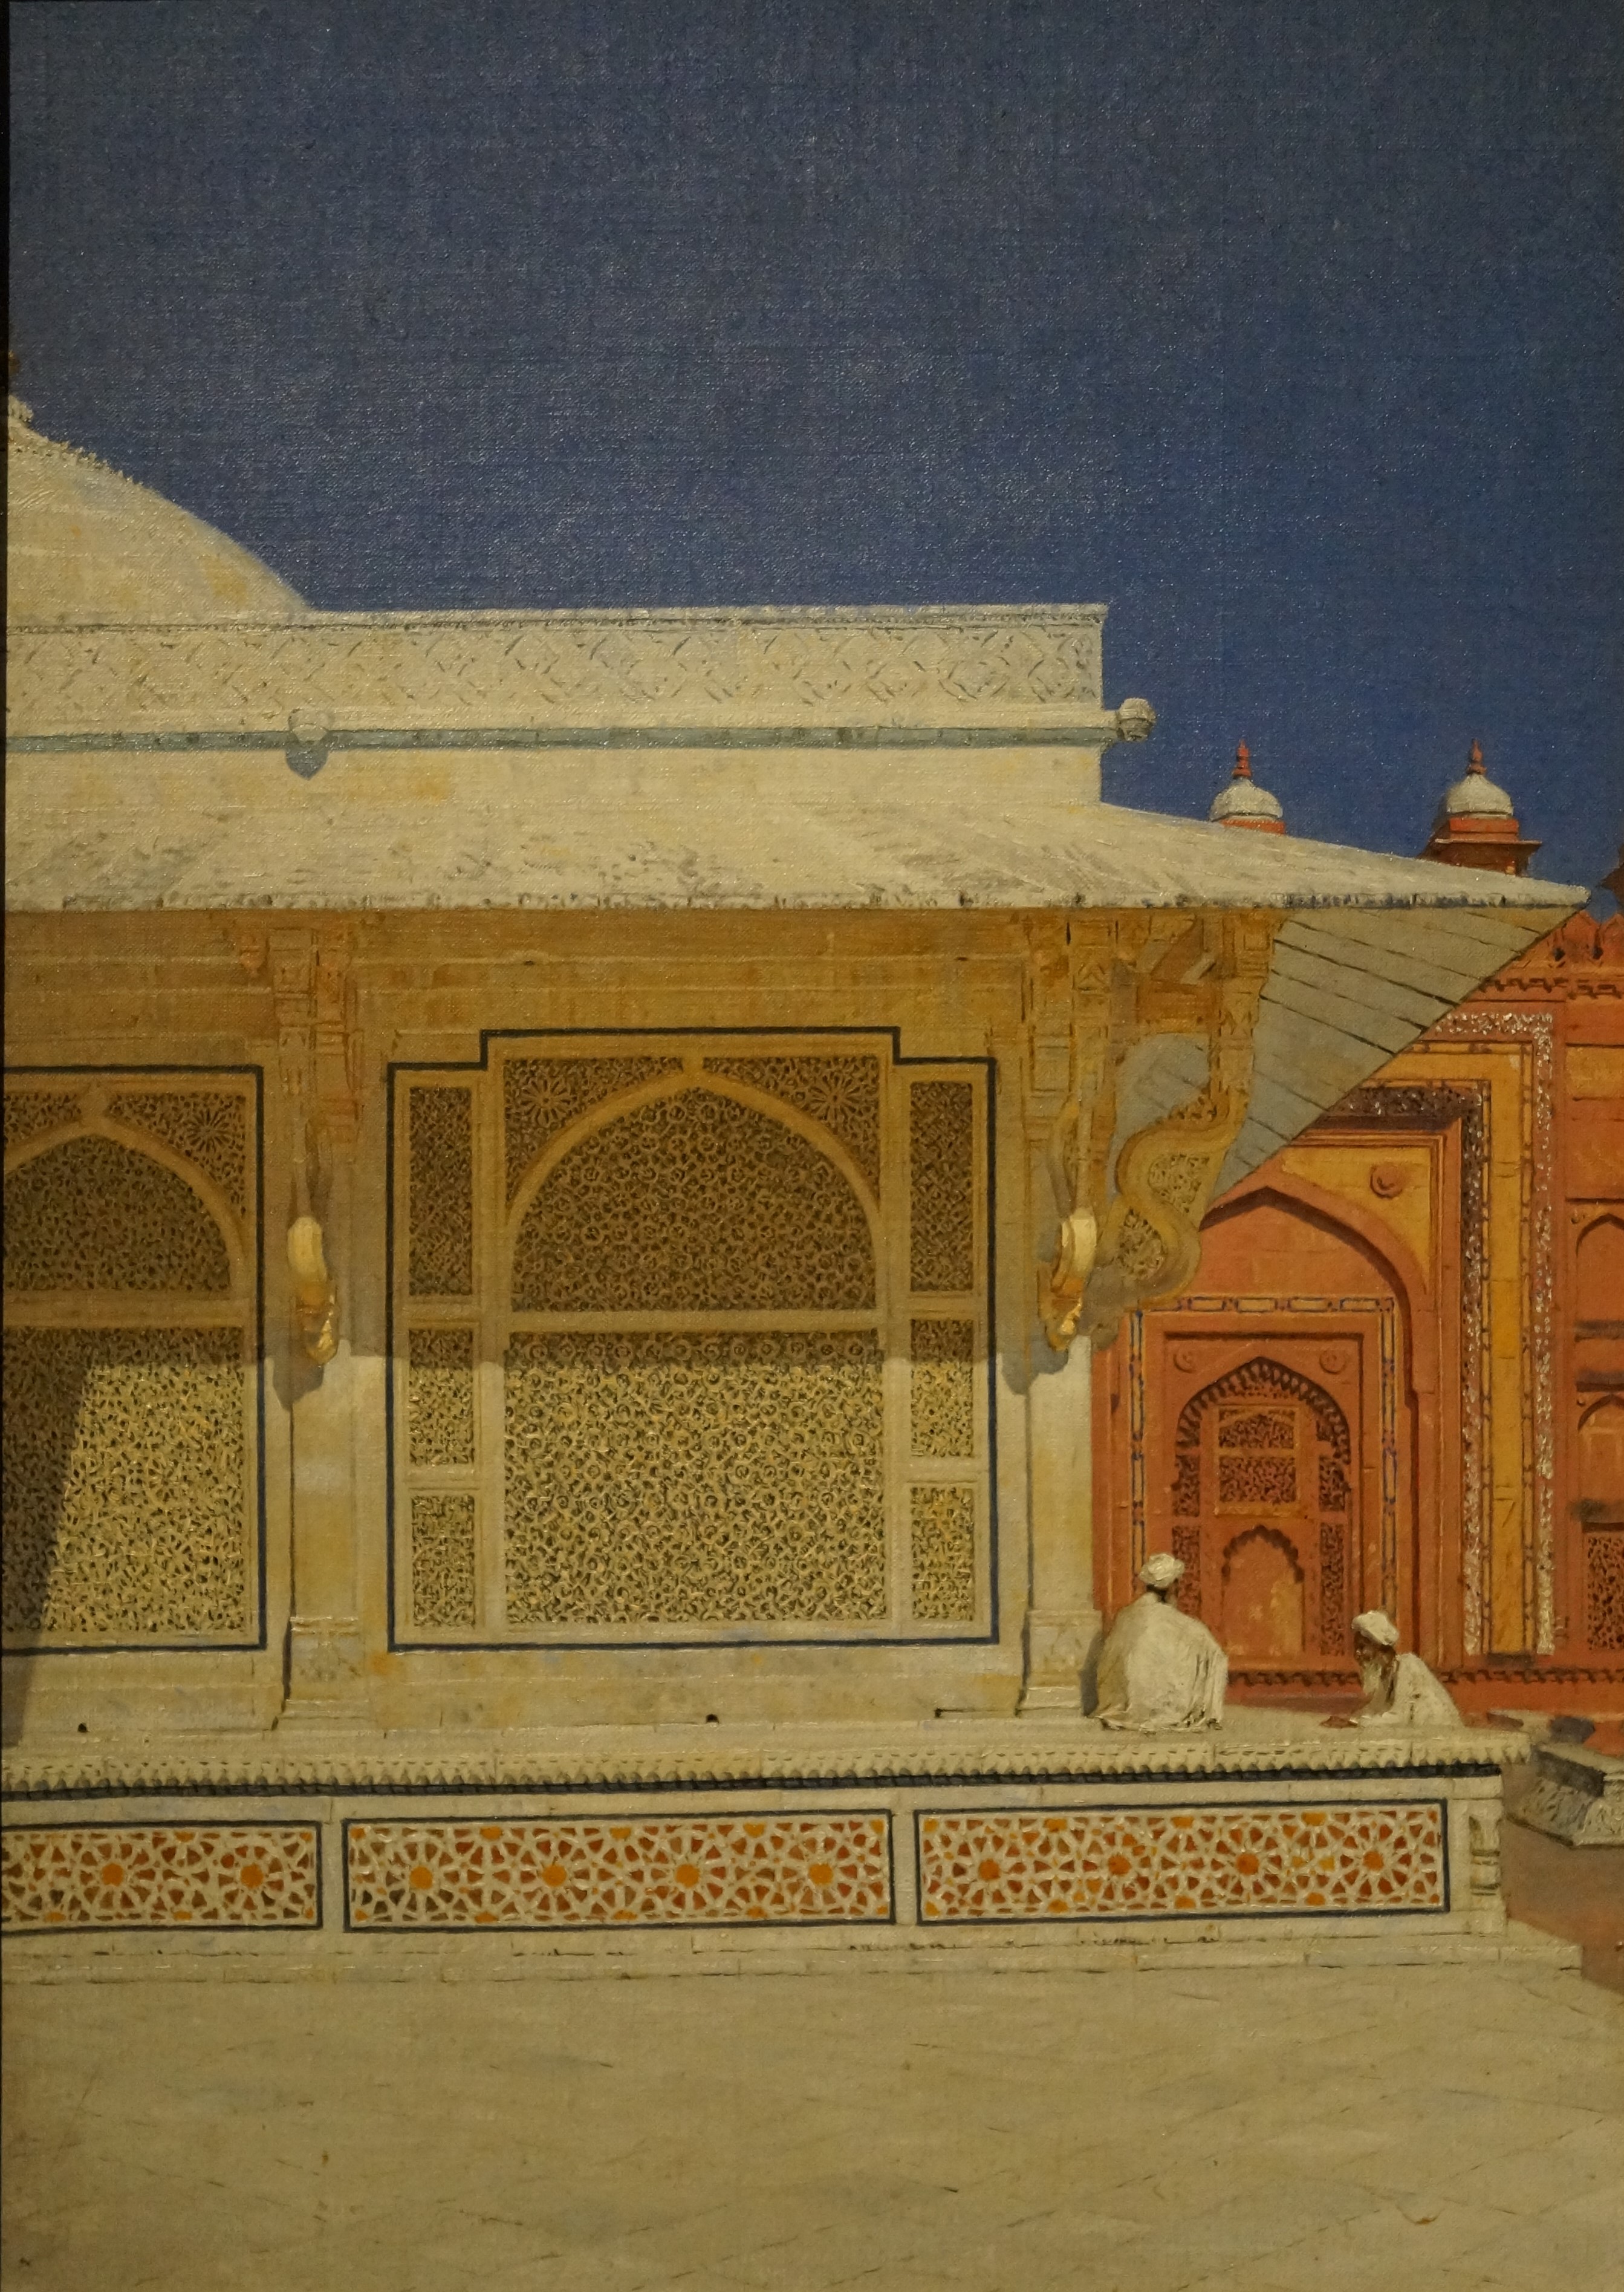 The Tomb of Sheikh Salim Chishti in Fatehpur Sikri by Vasily Vereshchagin - 1874-1876 - 46 x 34 cm Tretyakov Gallery